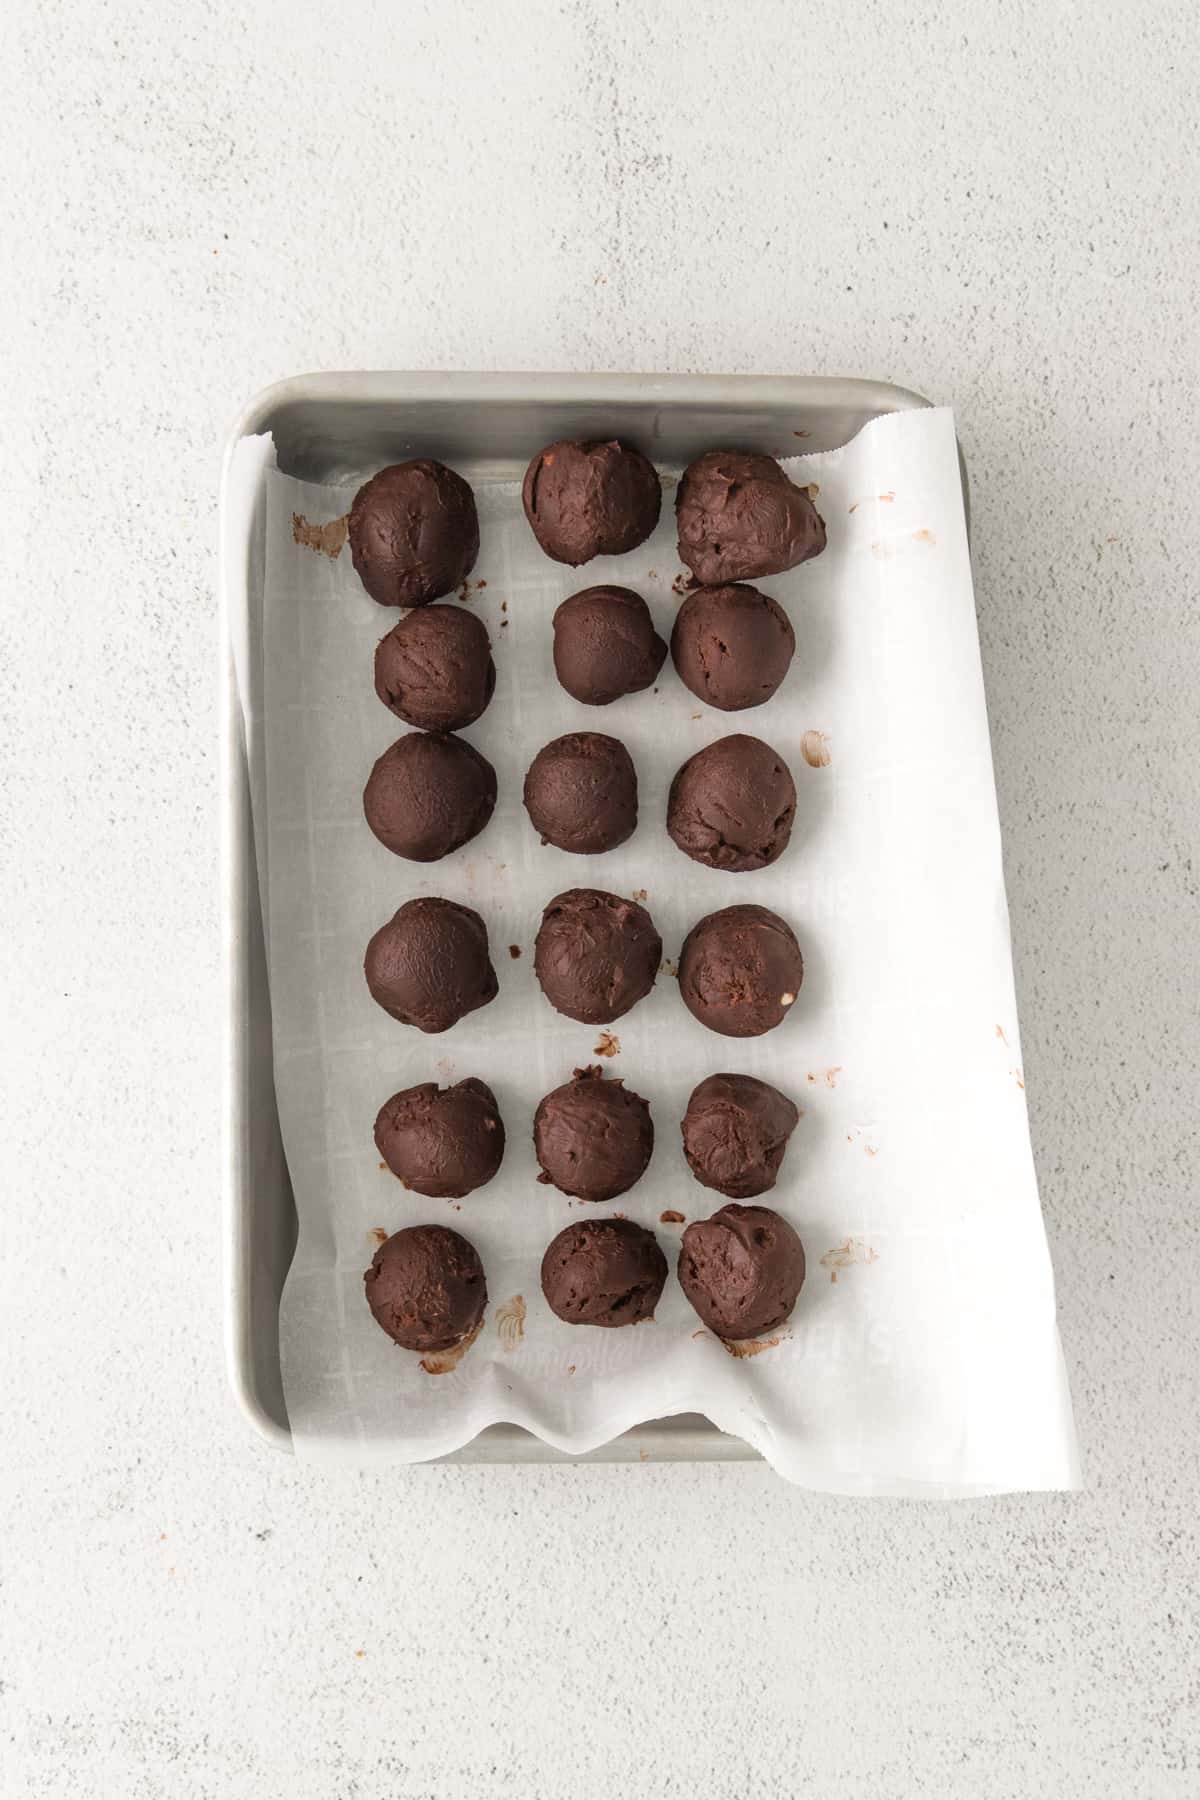 Truffles on lined baking sheet